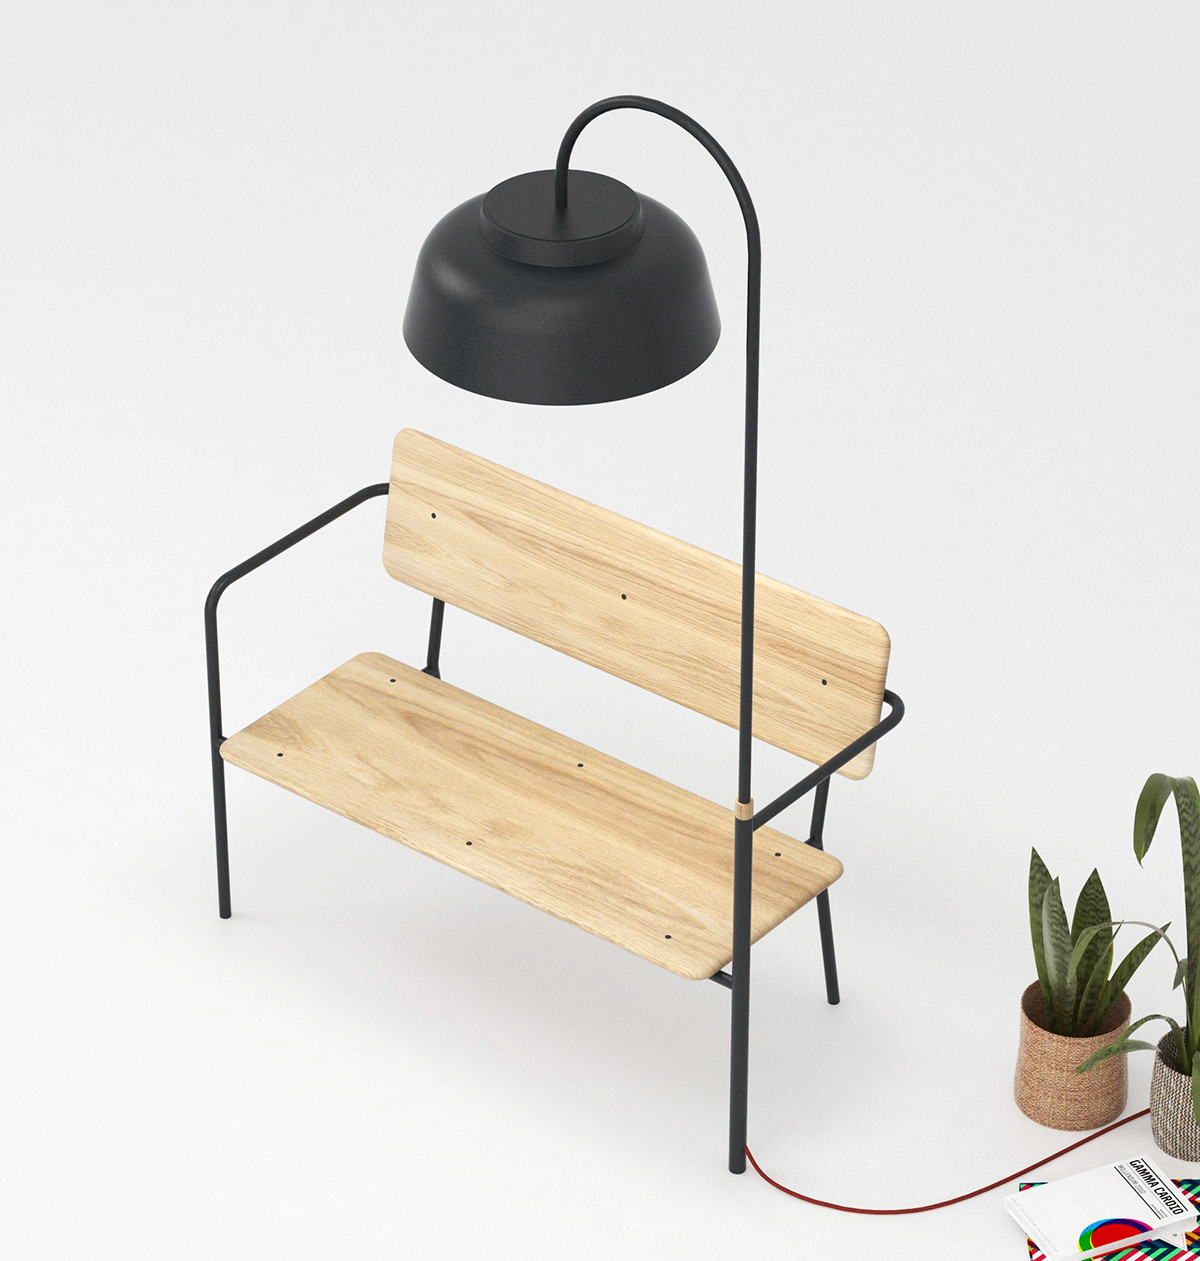 Banc bench light lampe design design de poduit bois metal